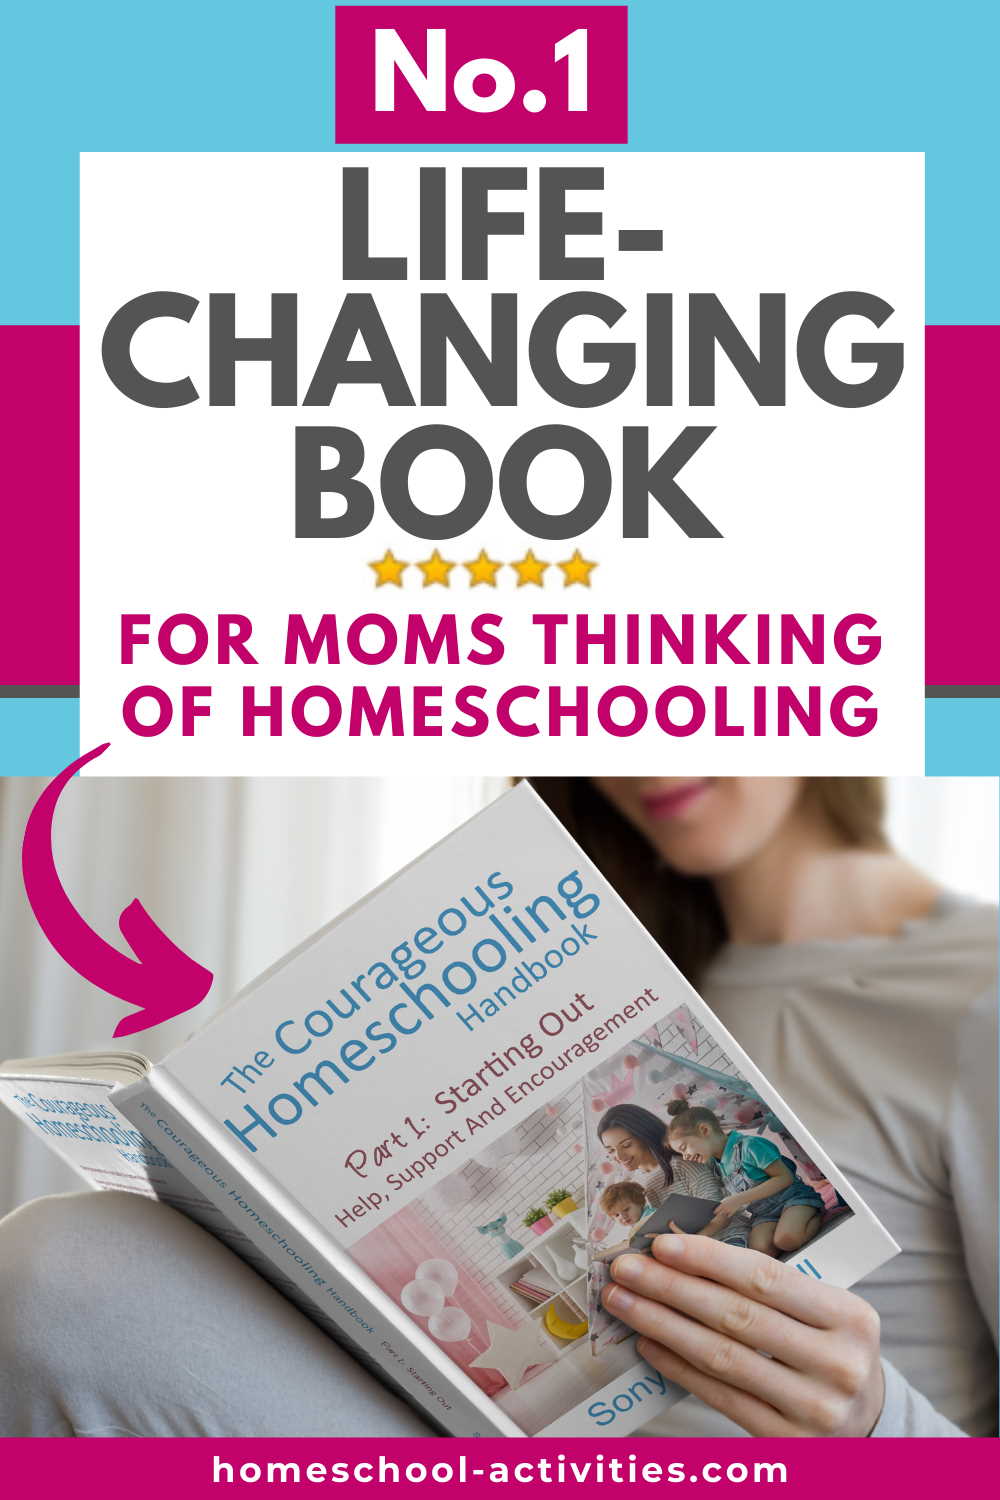 Courageous Homeschooling Handbook